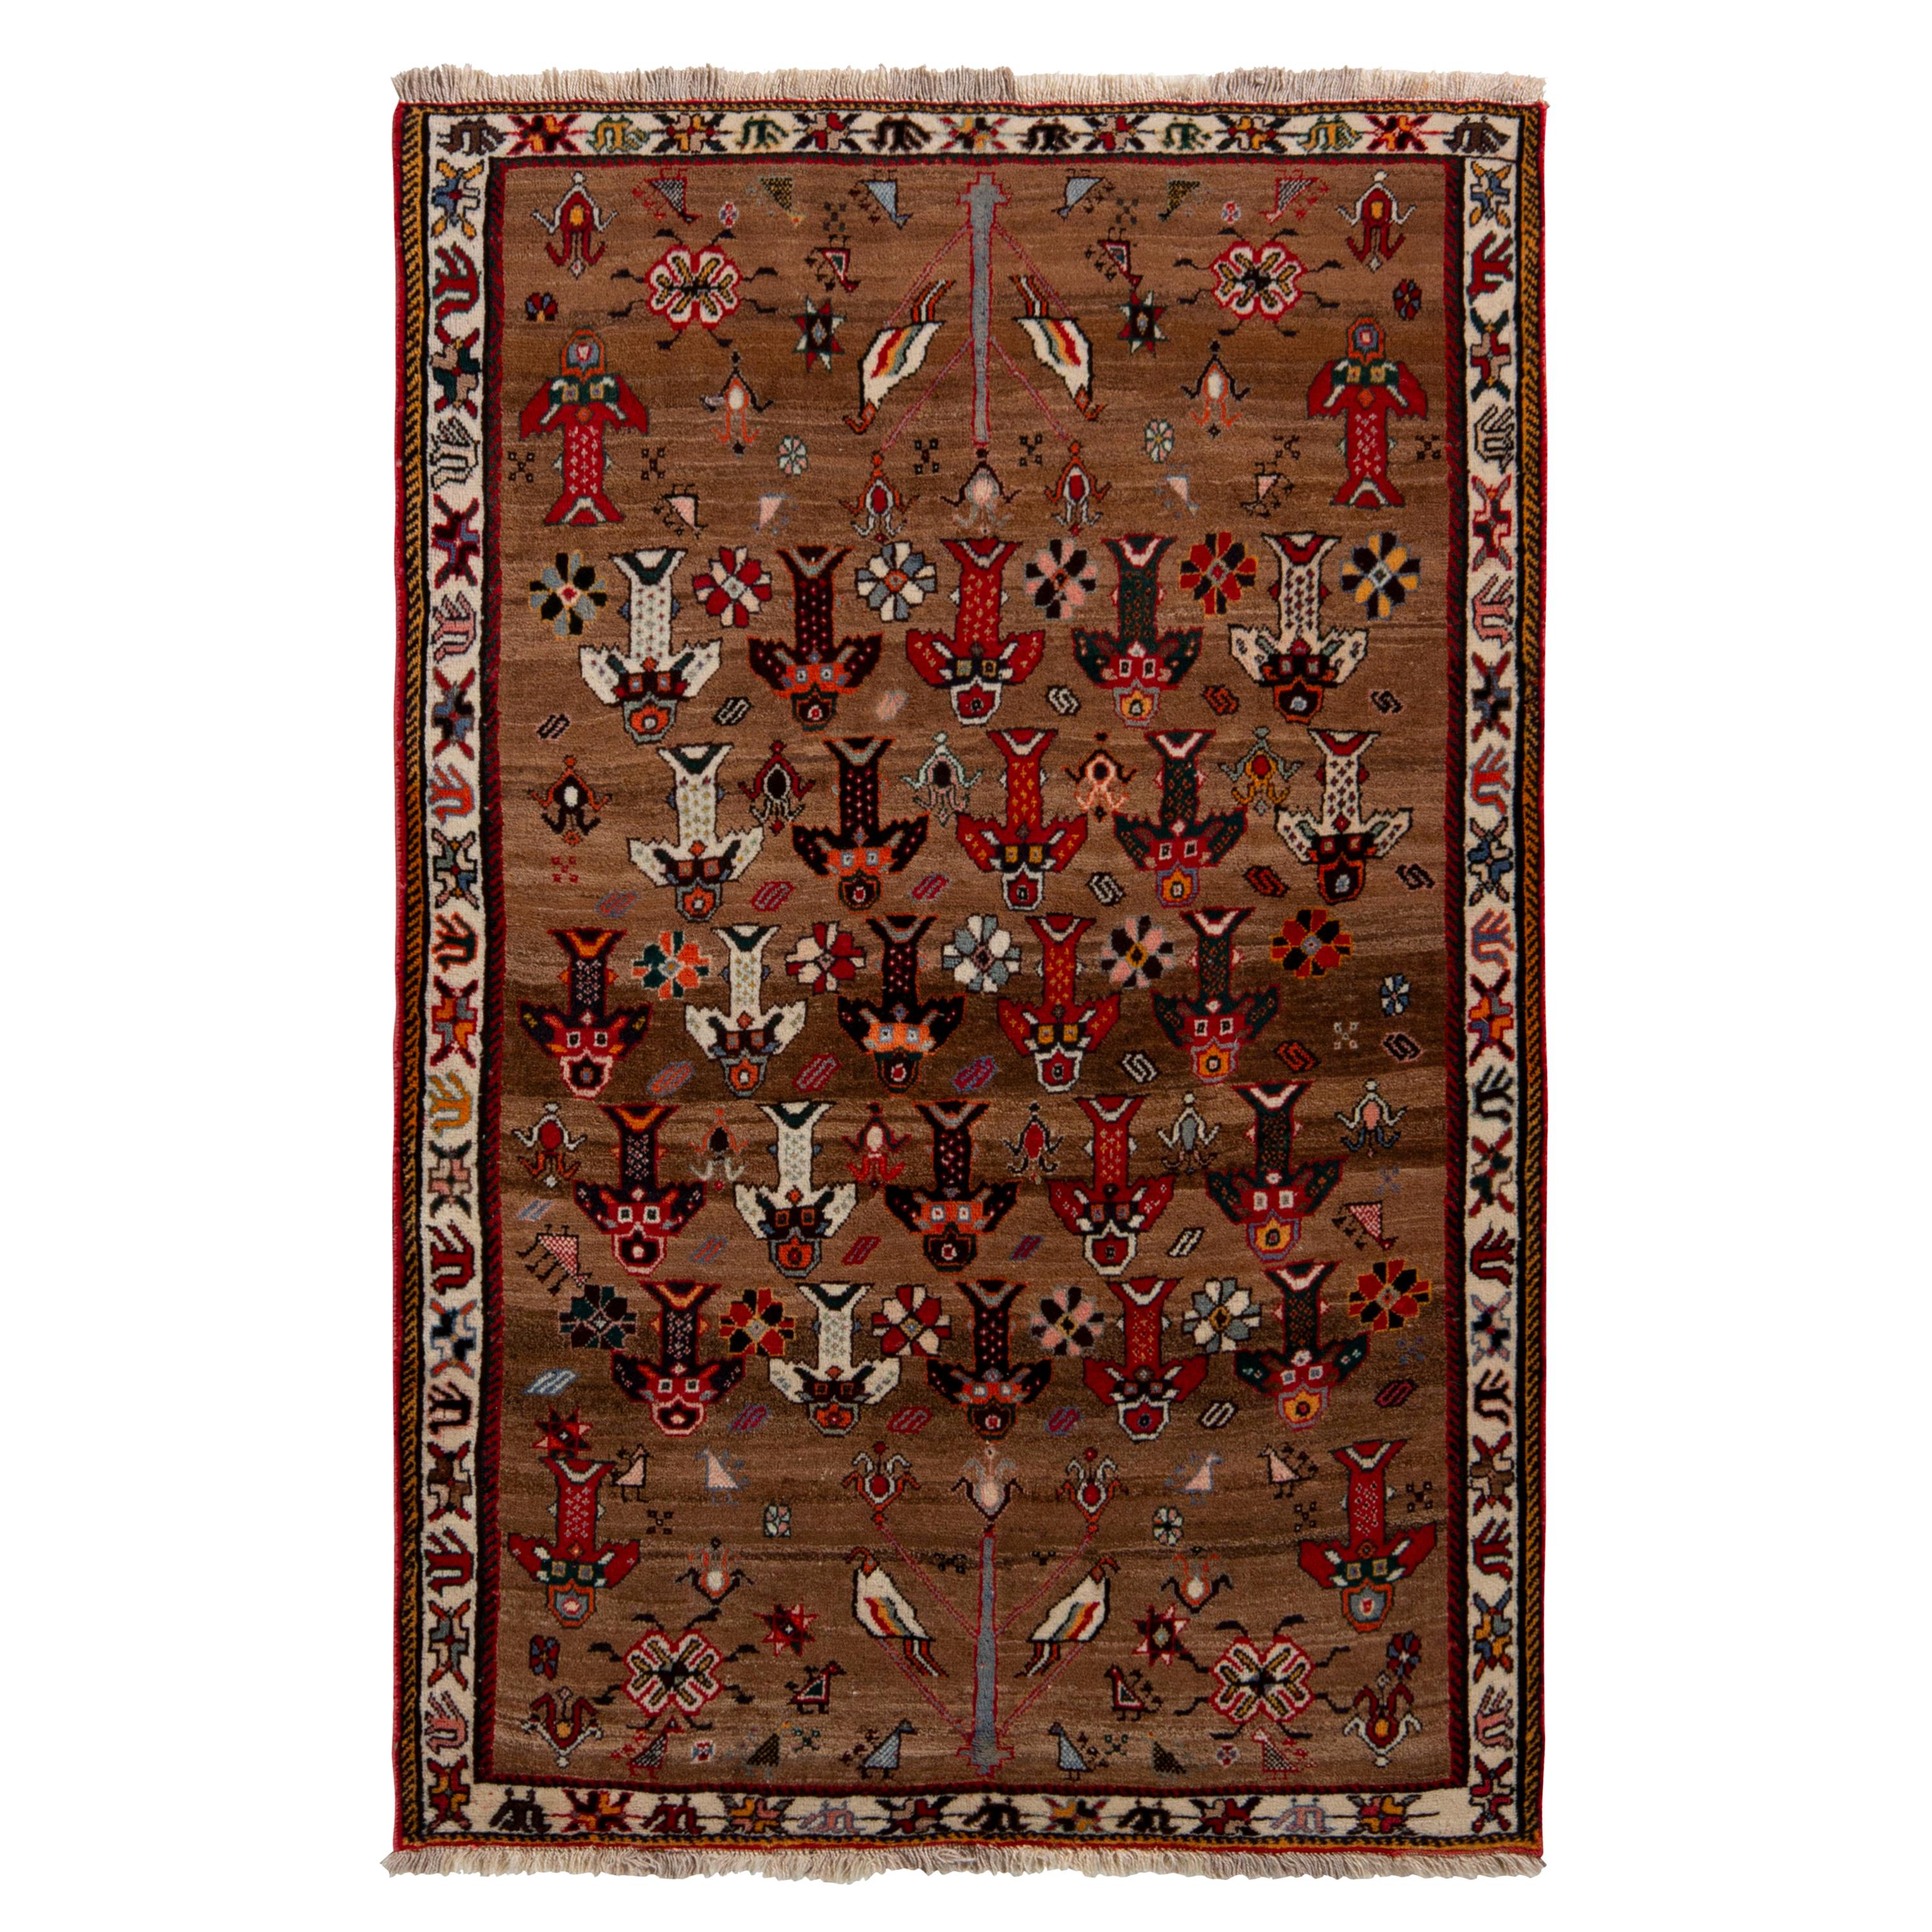 Persischer Gabbeh-Teppich in Beige-Braun & Rot mit geometrischem Muster von Teppich & Kilim